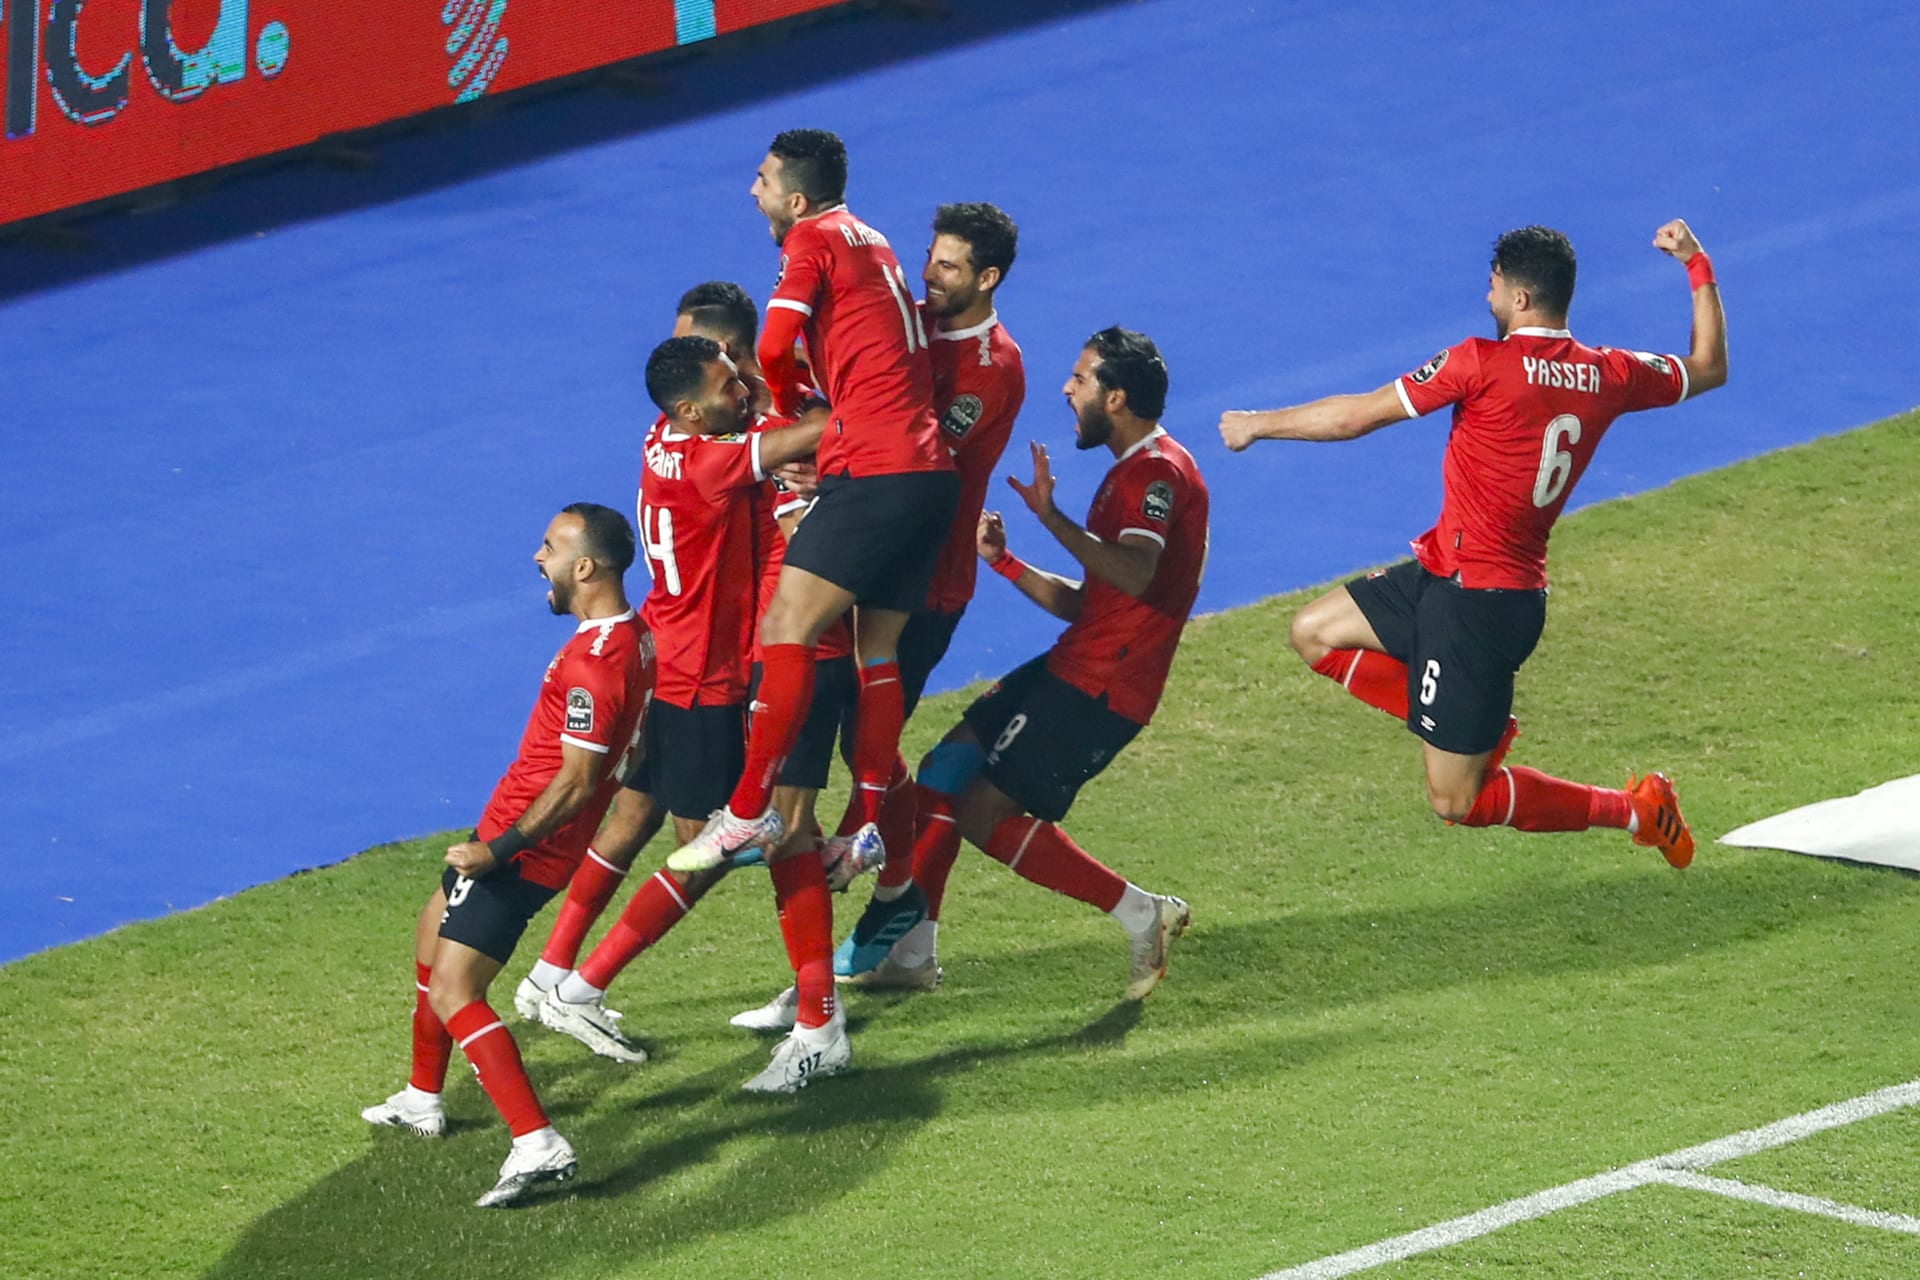 الأهلي المصري يُتوج بلقبه التاسع لدوري أبطال إفريقيا بعد مباراة مثيرة مع الزمالك